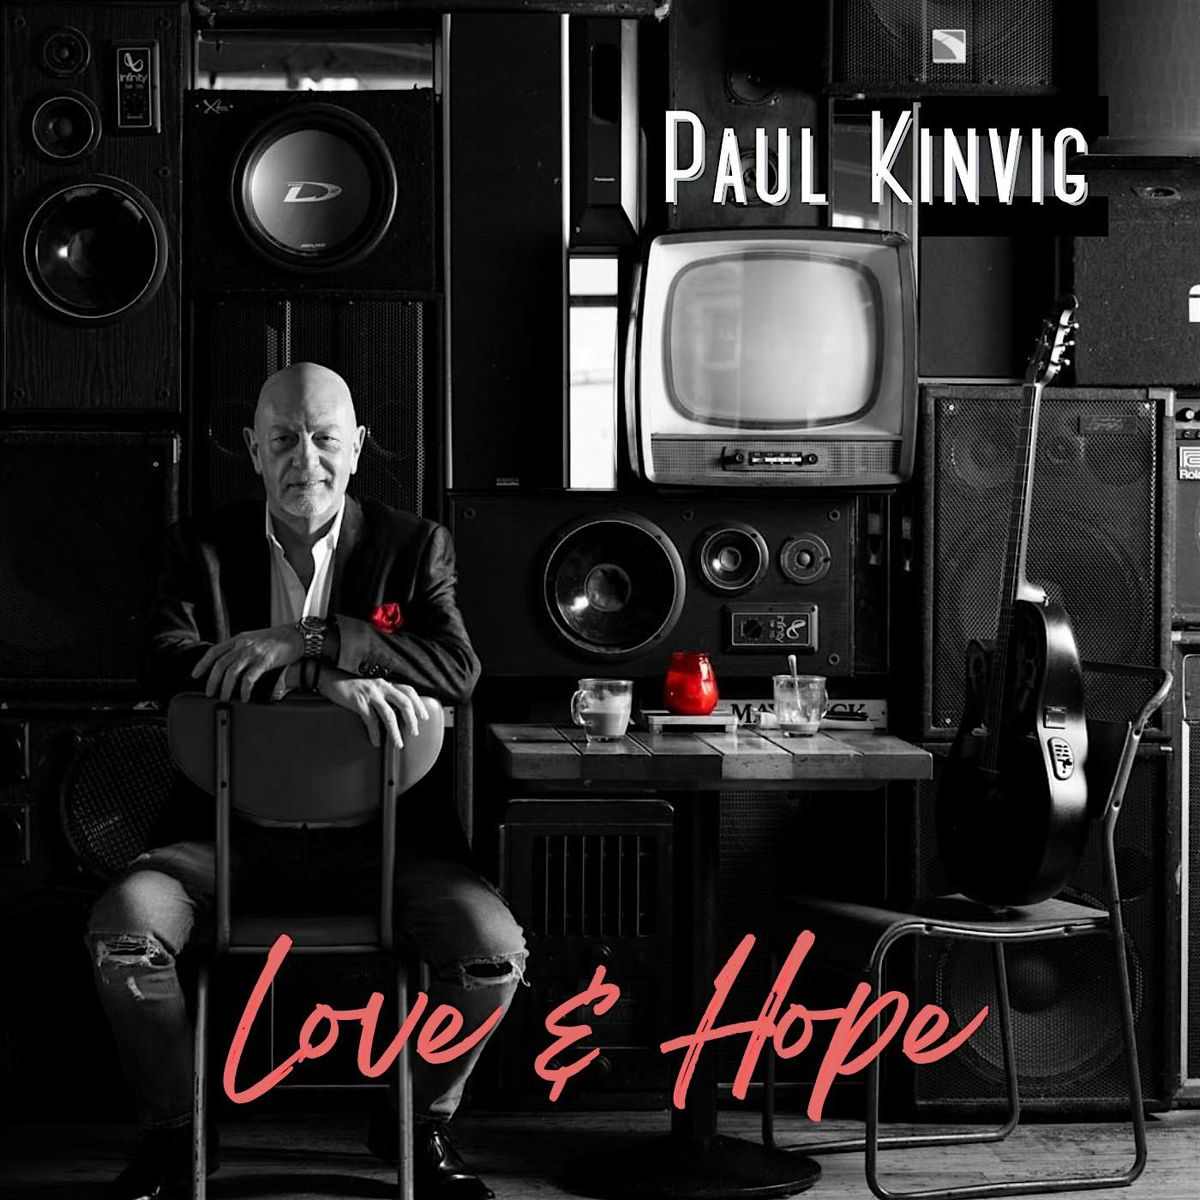 "Love & Hope" Album Launch Party